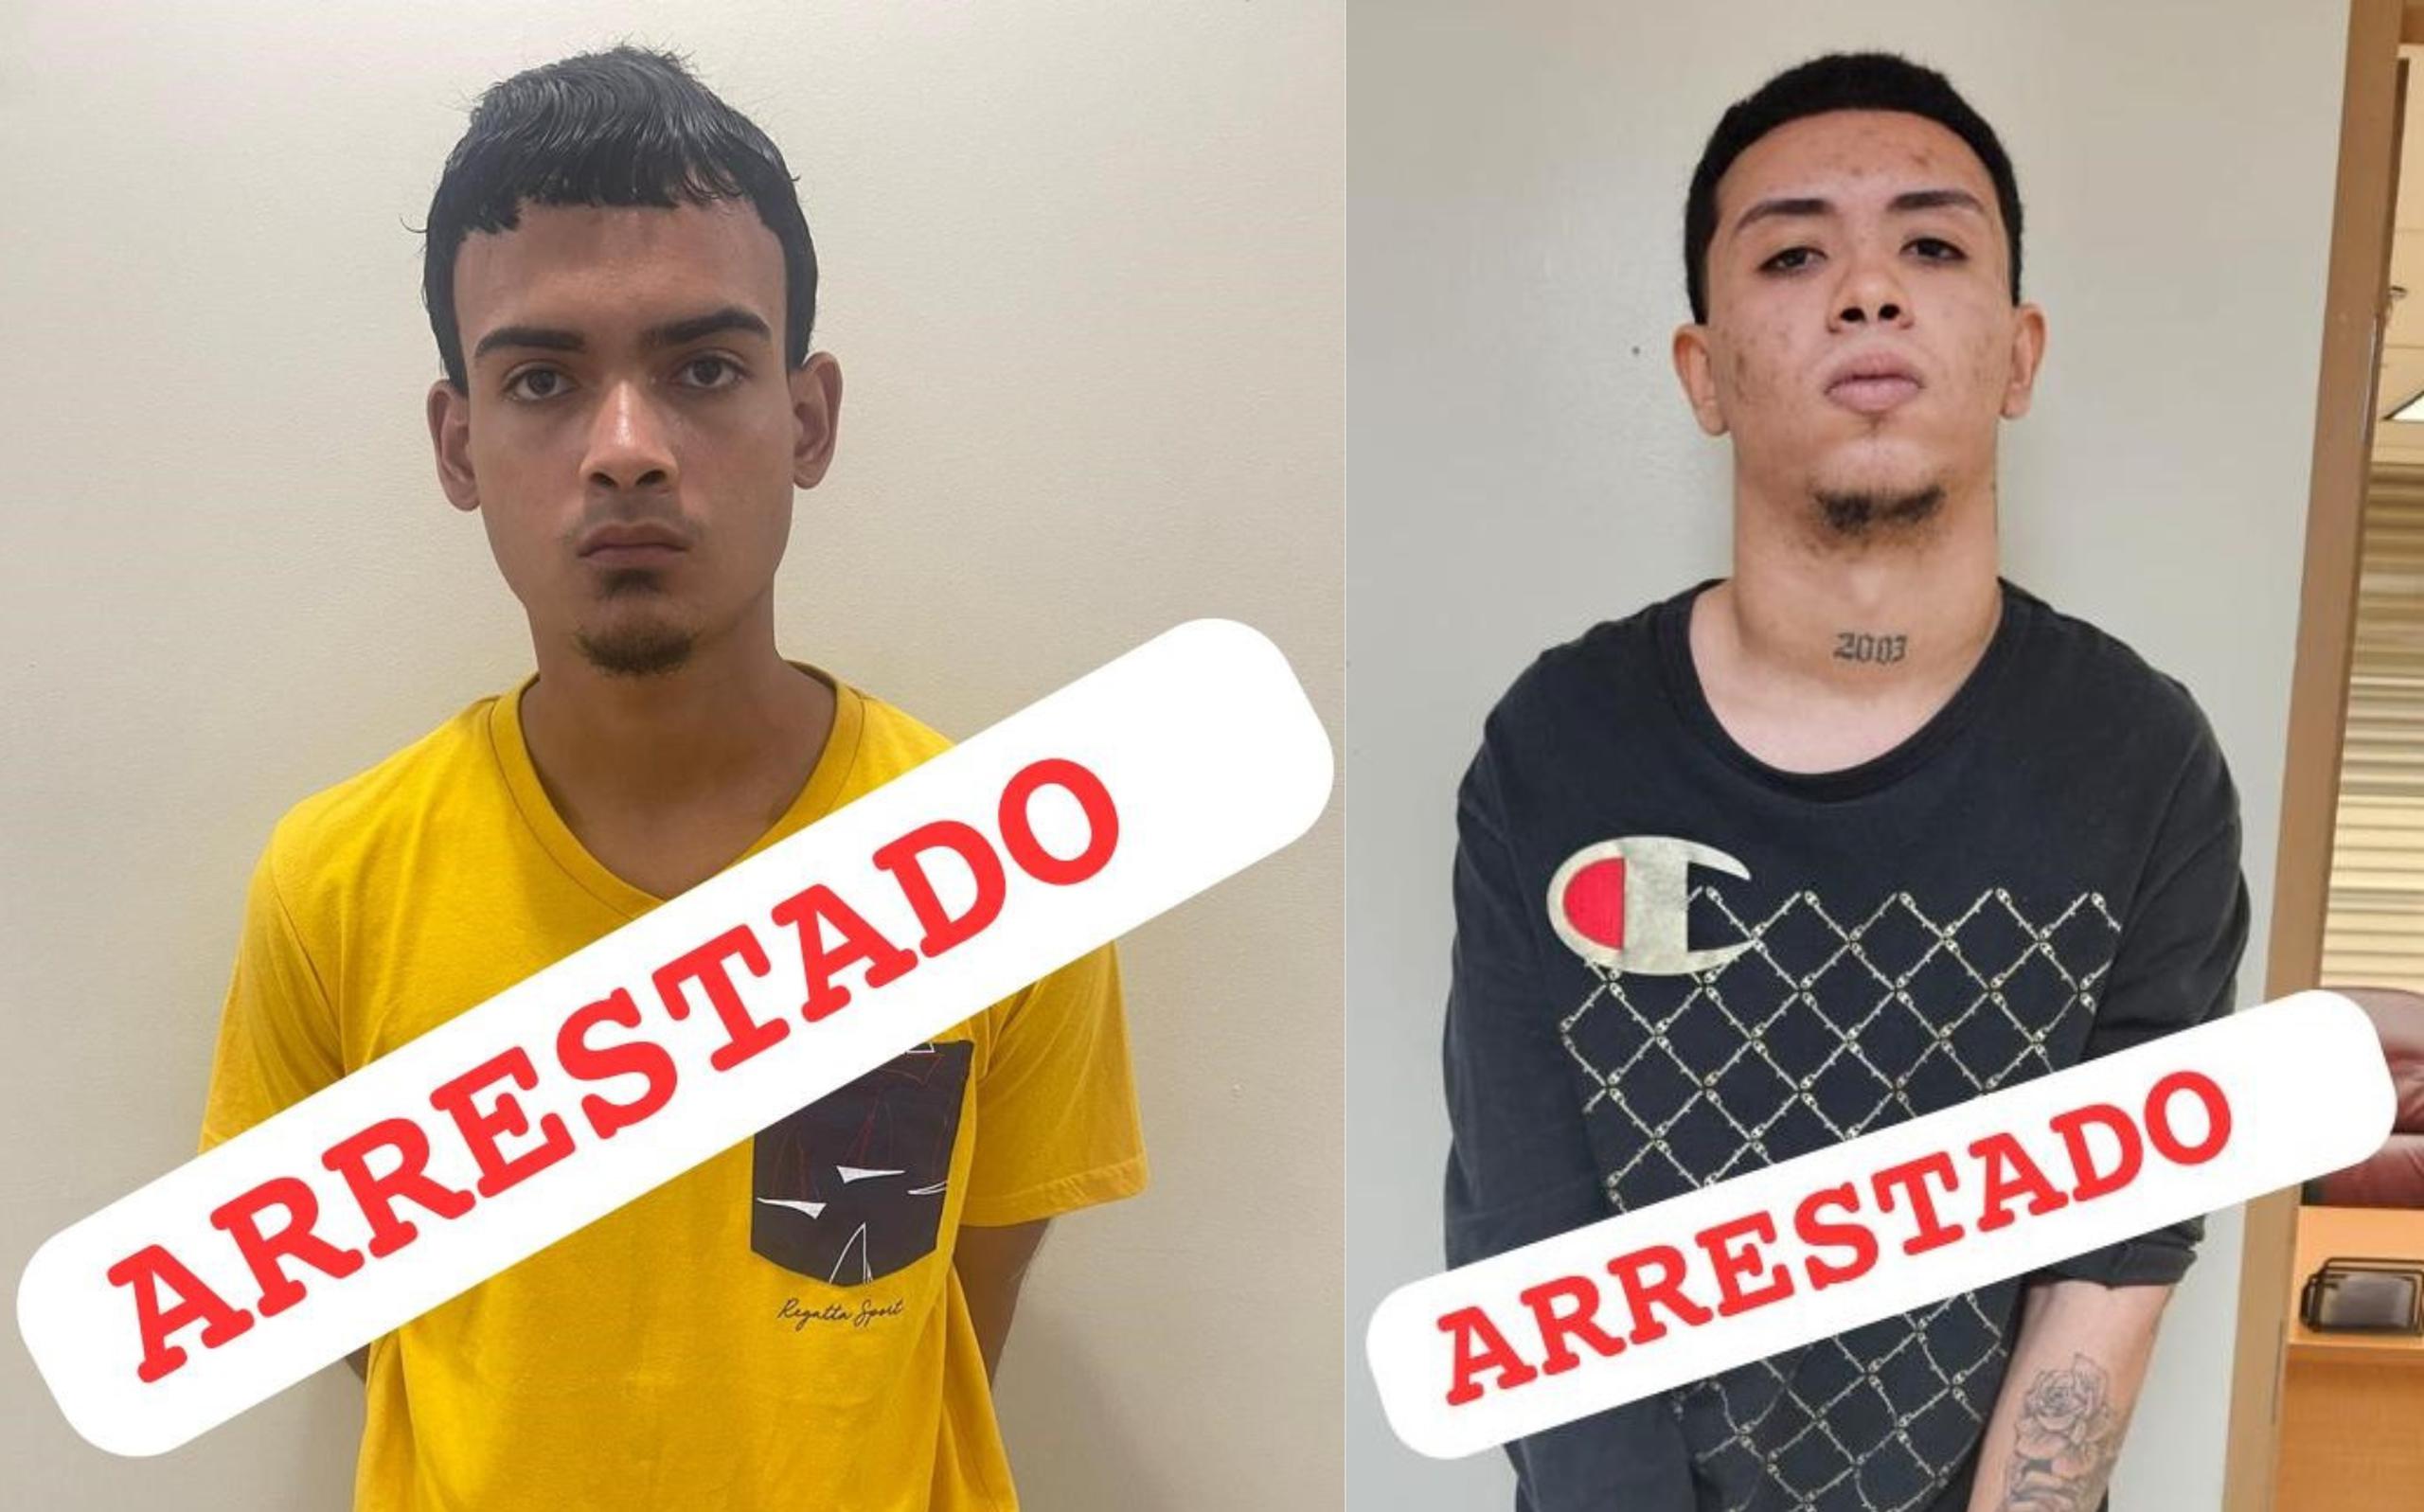 Los arrestados también son sospechosos de "carjackings" en la zona de Caguas, indicó la Policía.